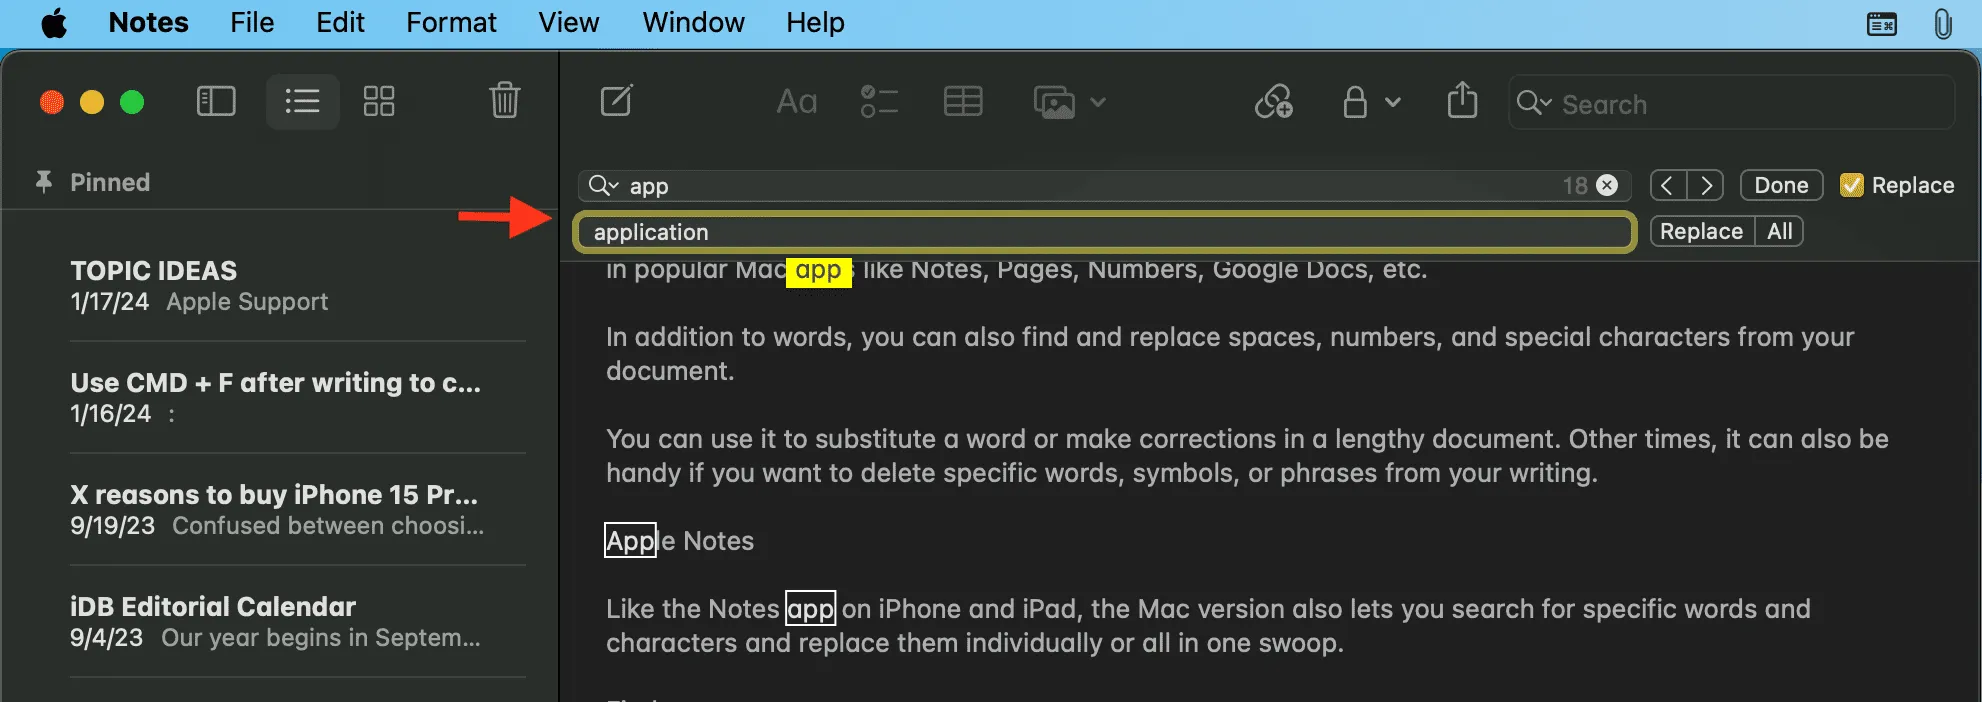 Brug af Find og erstat i Notes-appen på Mac